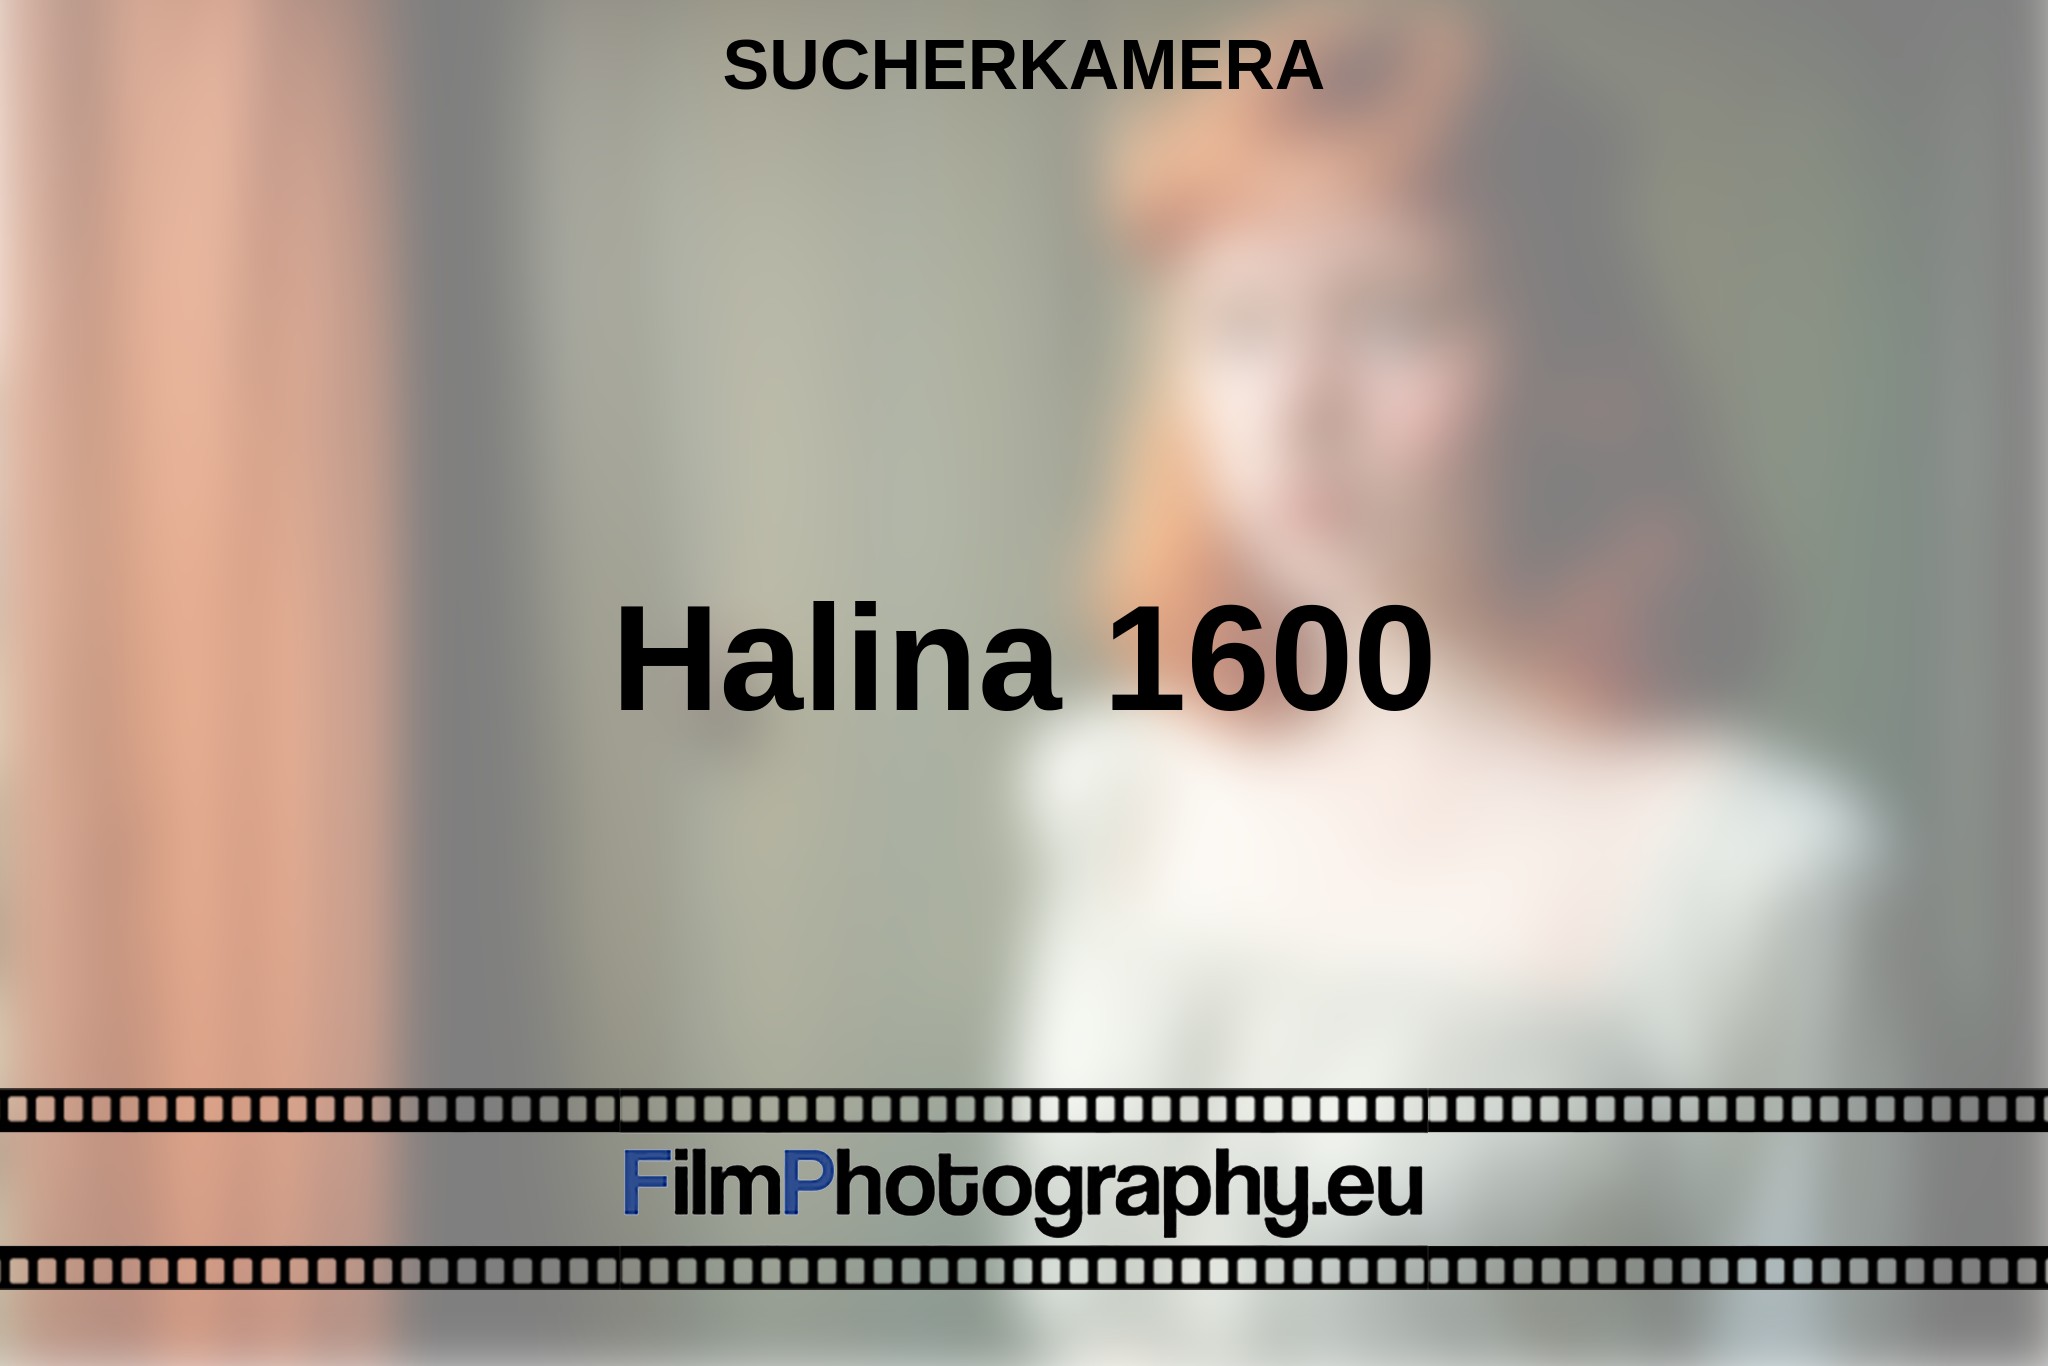 halina-1600-sucherkamera-bnv.jpg